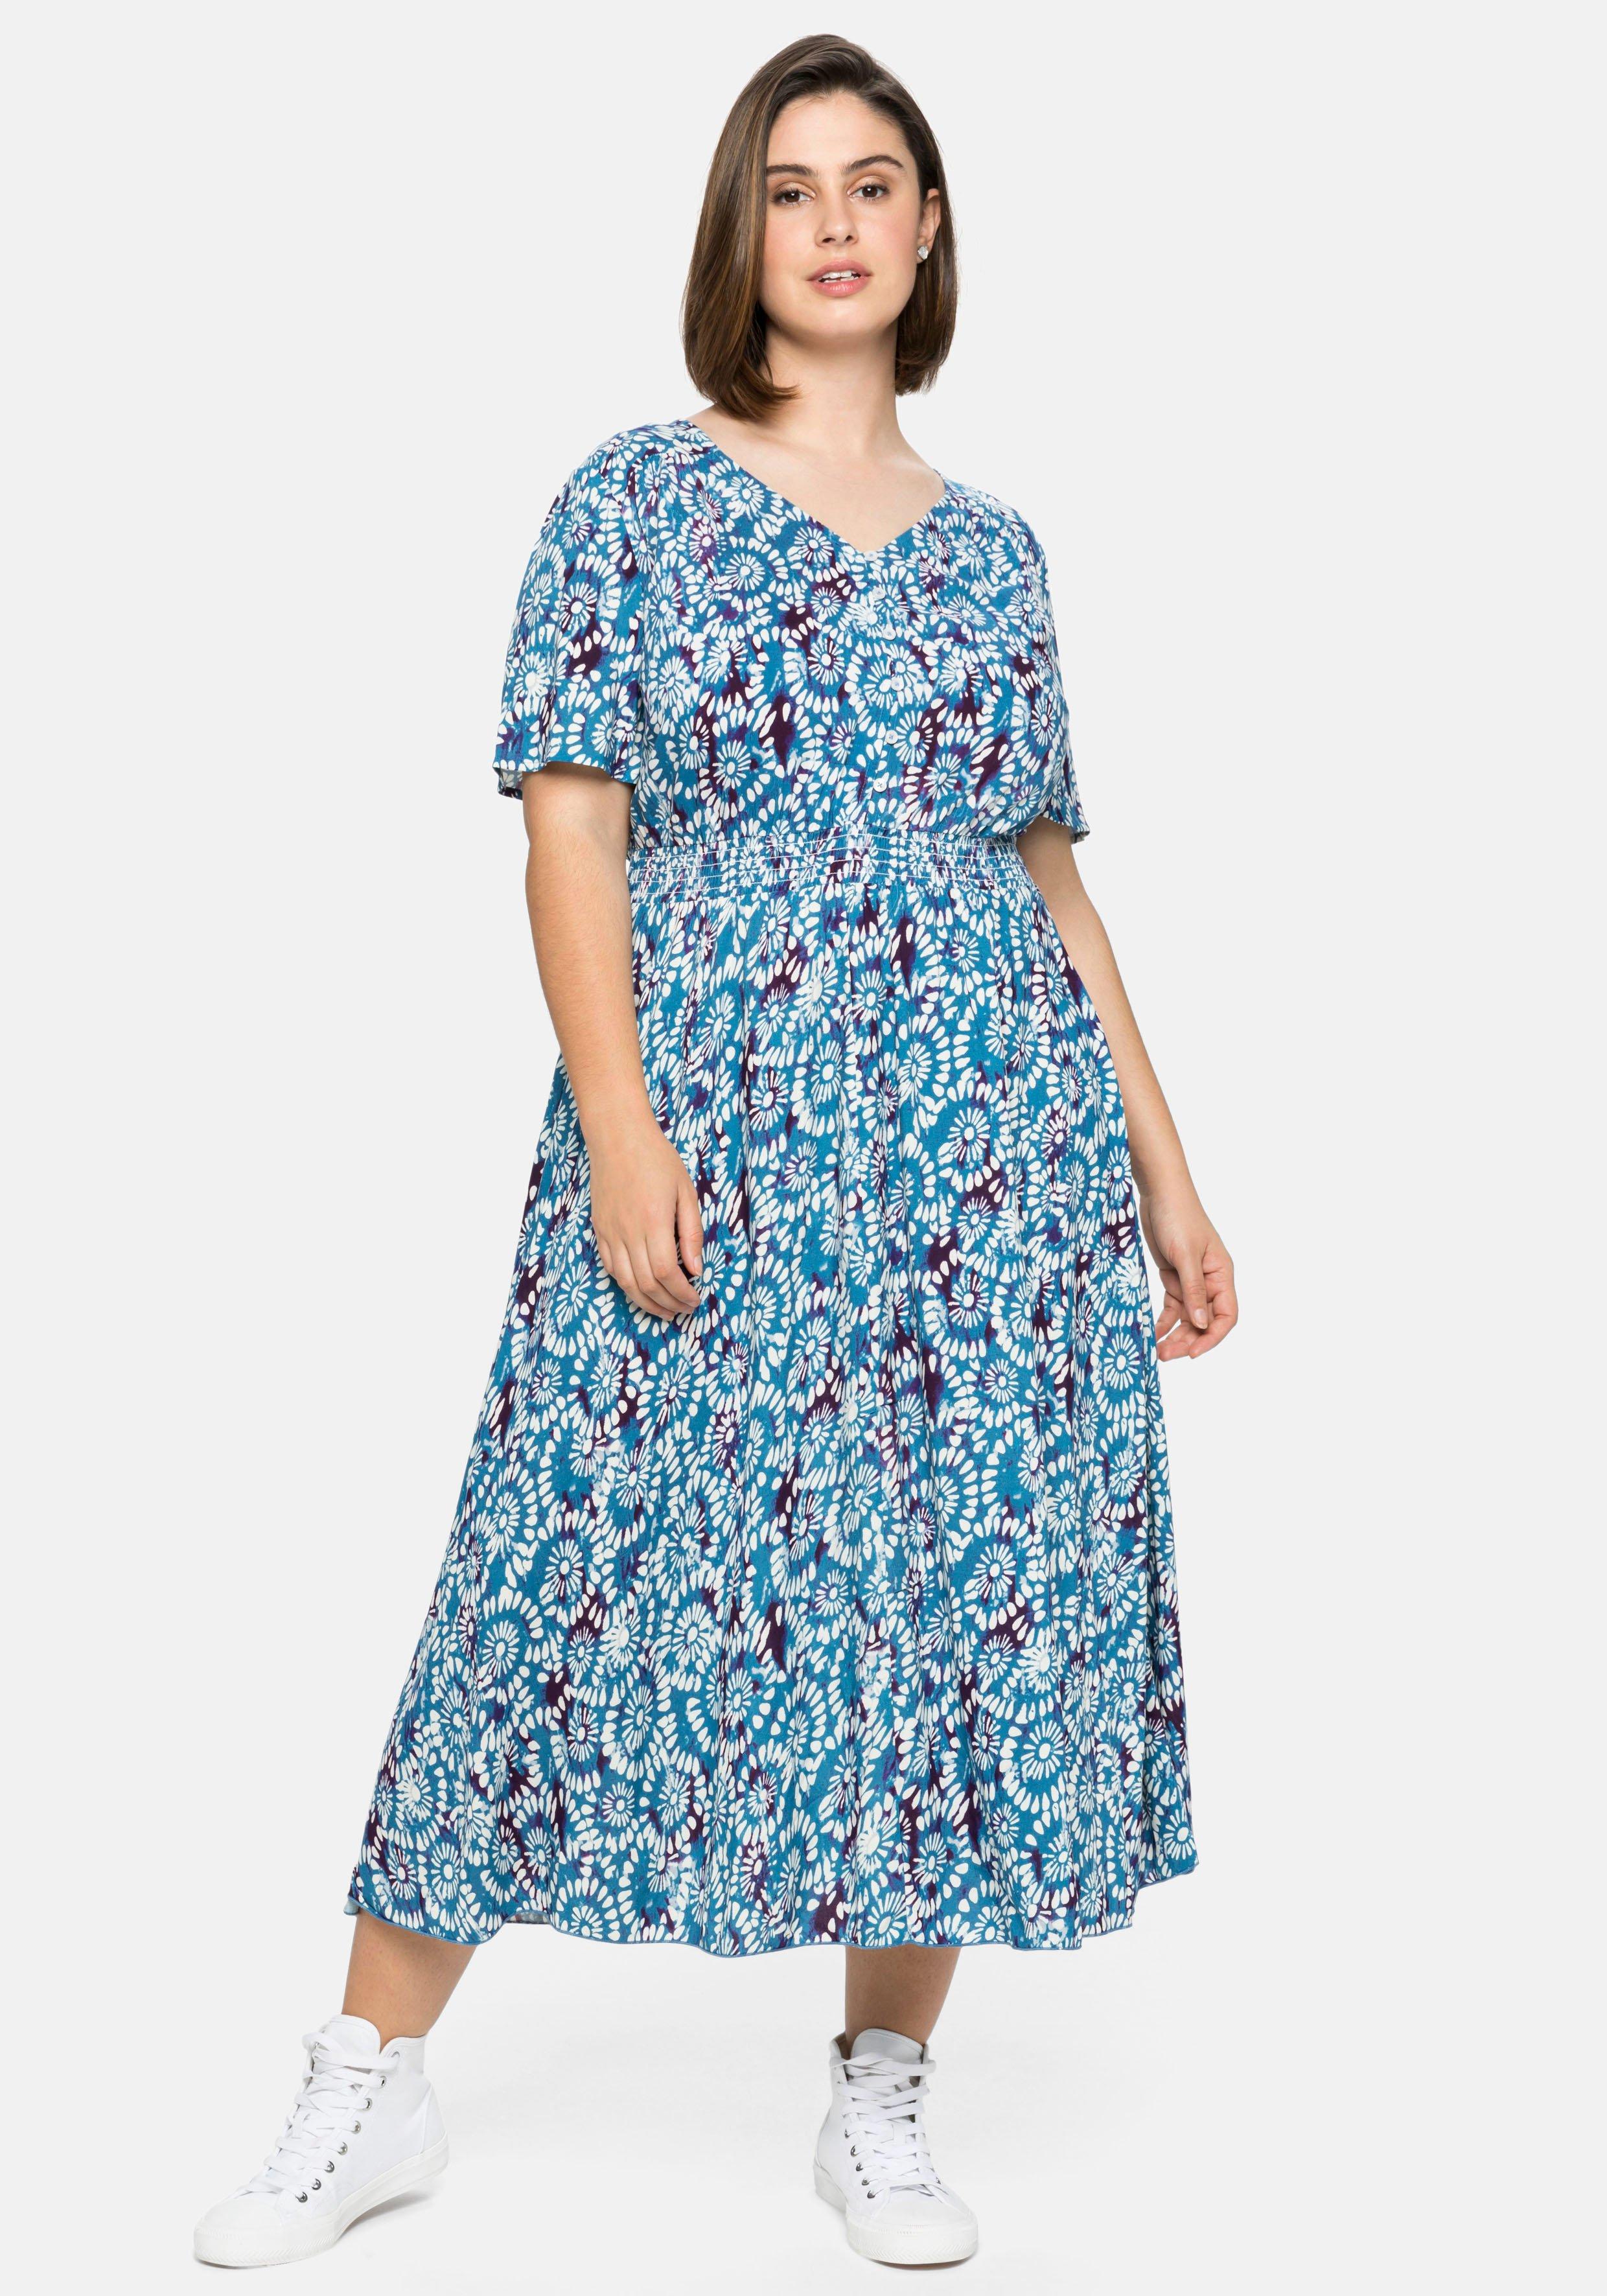 Smokbund sheego | - mit Kleid bedruckt Alloverdruck und blau